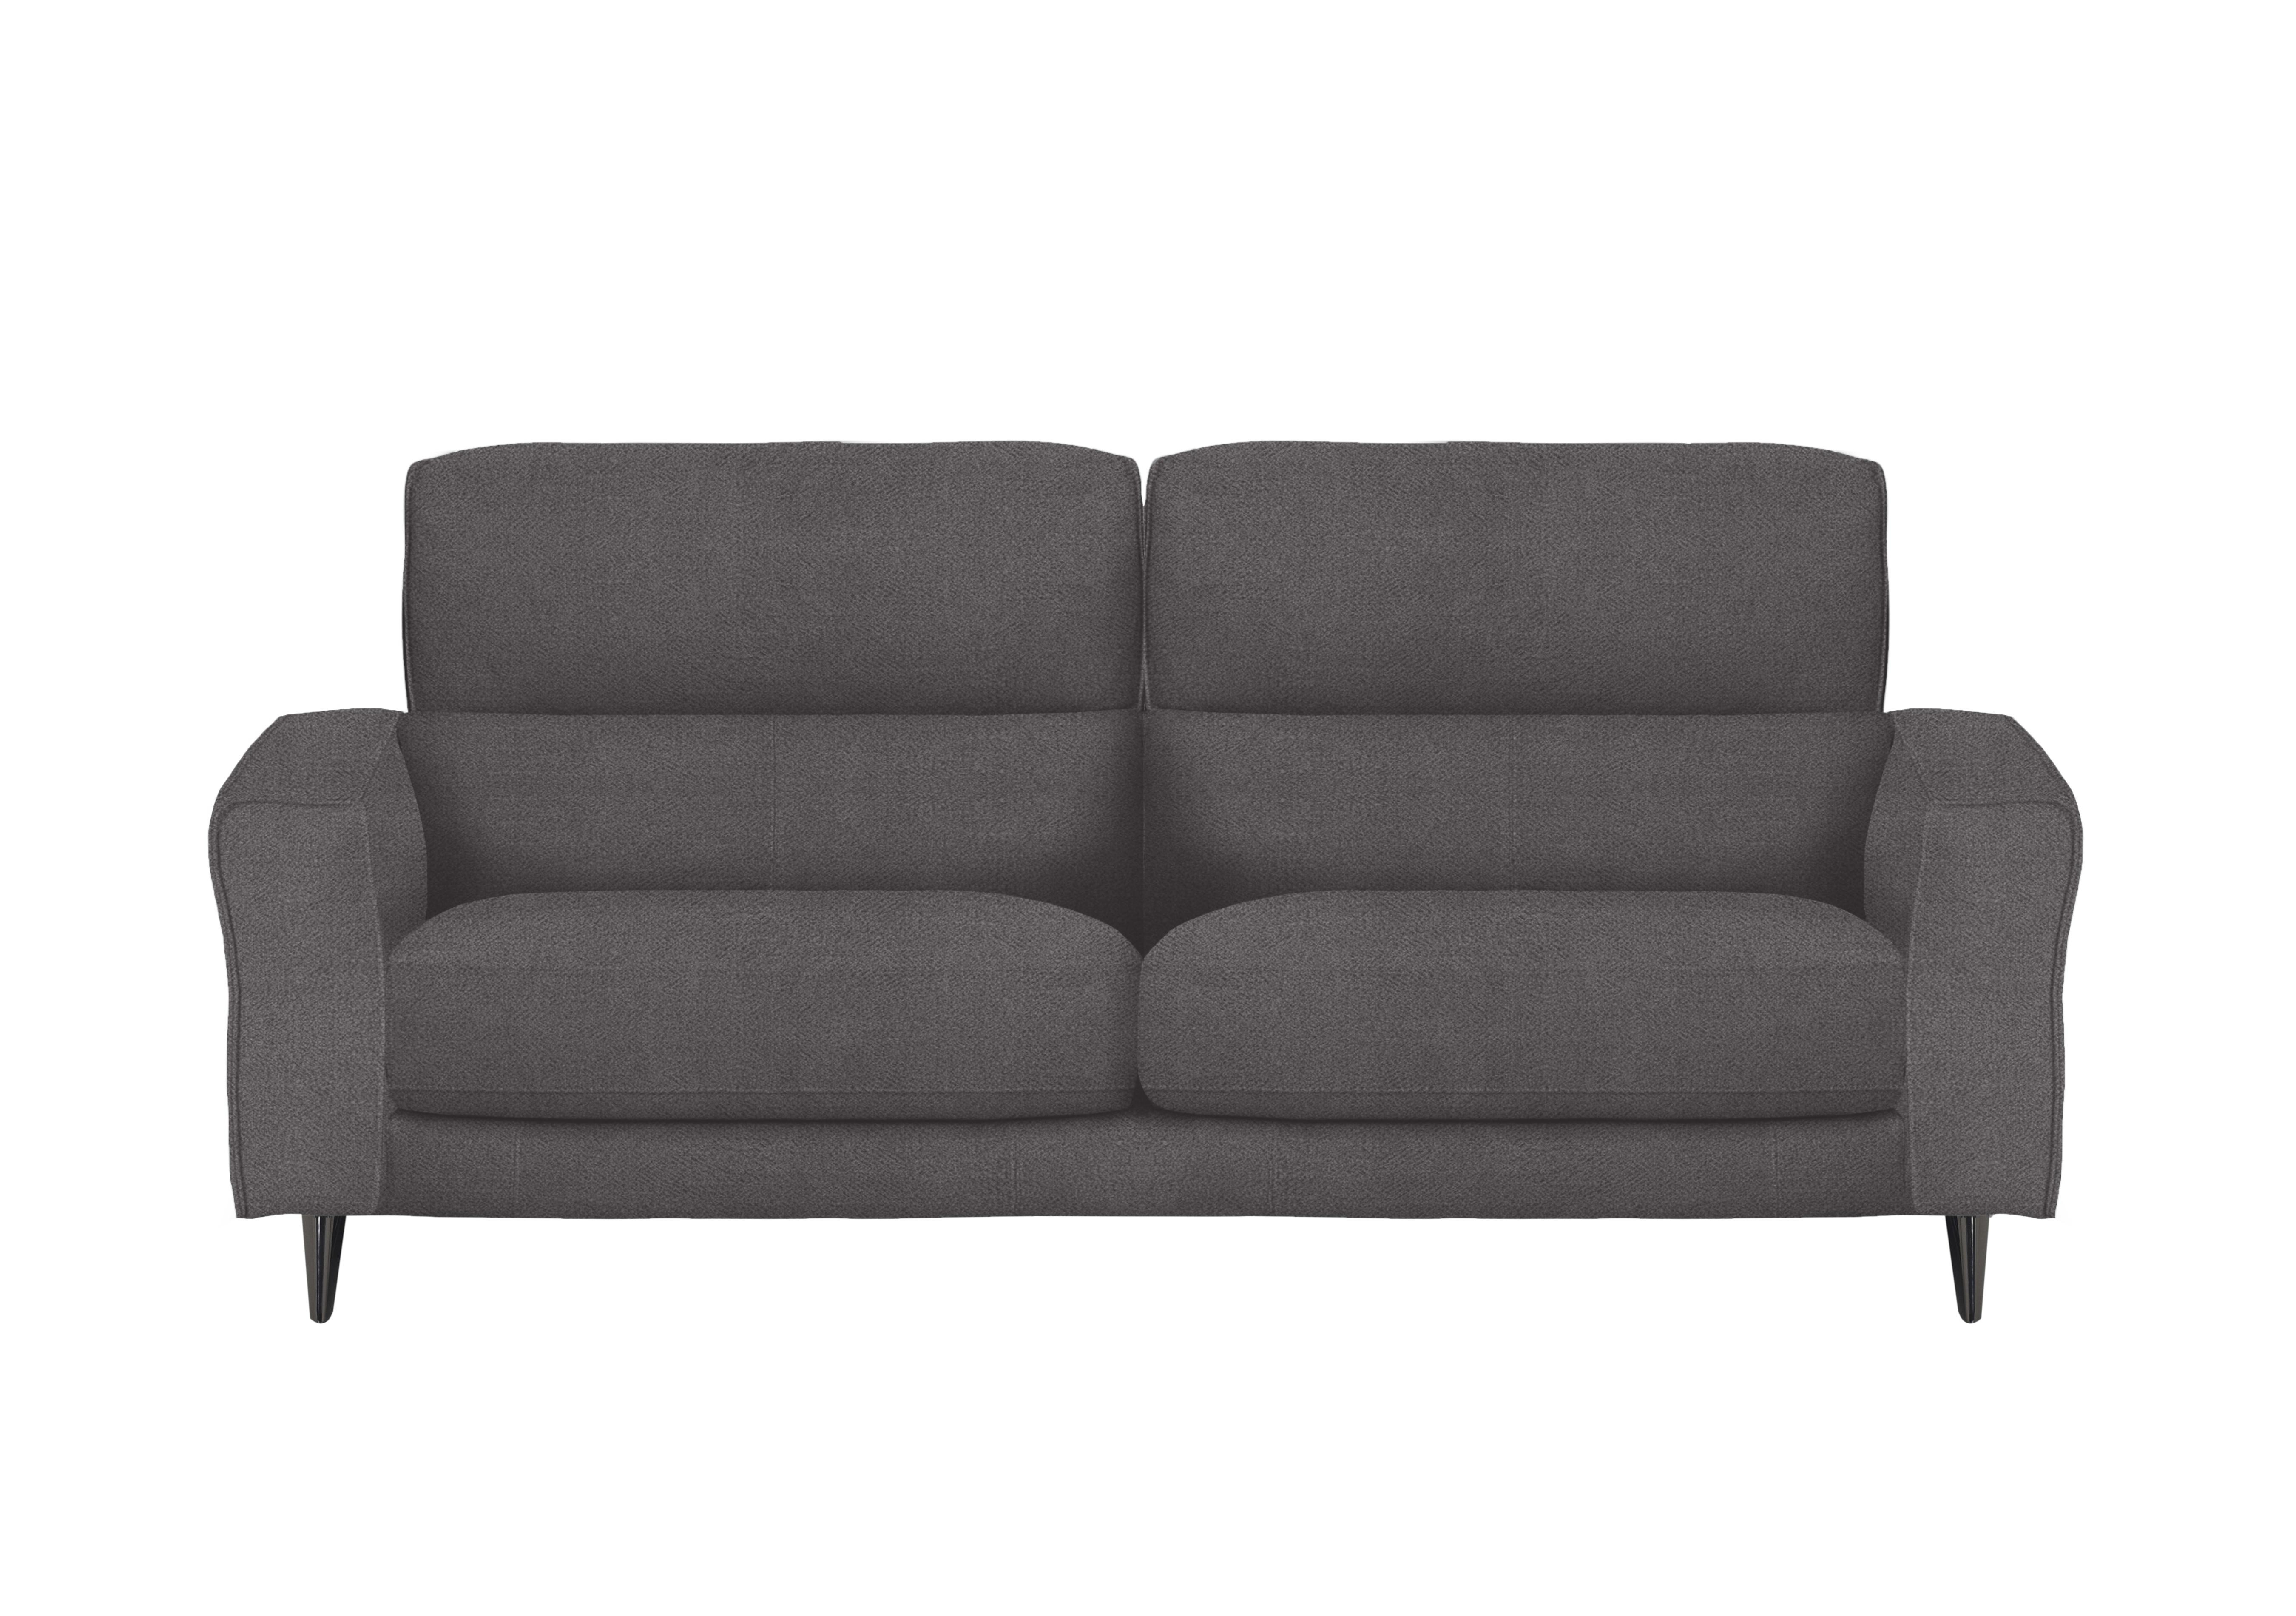 Axel 3 Seater Fabric Sofa in Fab-Meo-R25 Iron Grey on Furniture Village